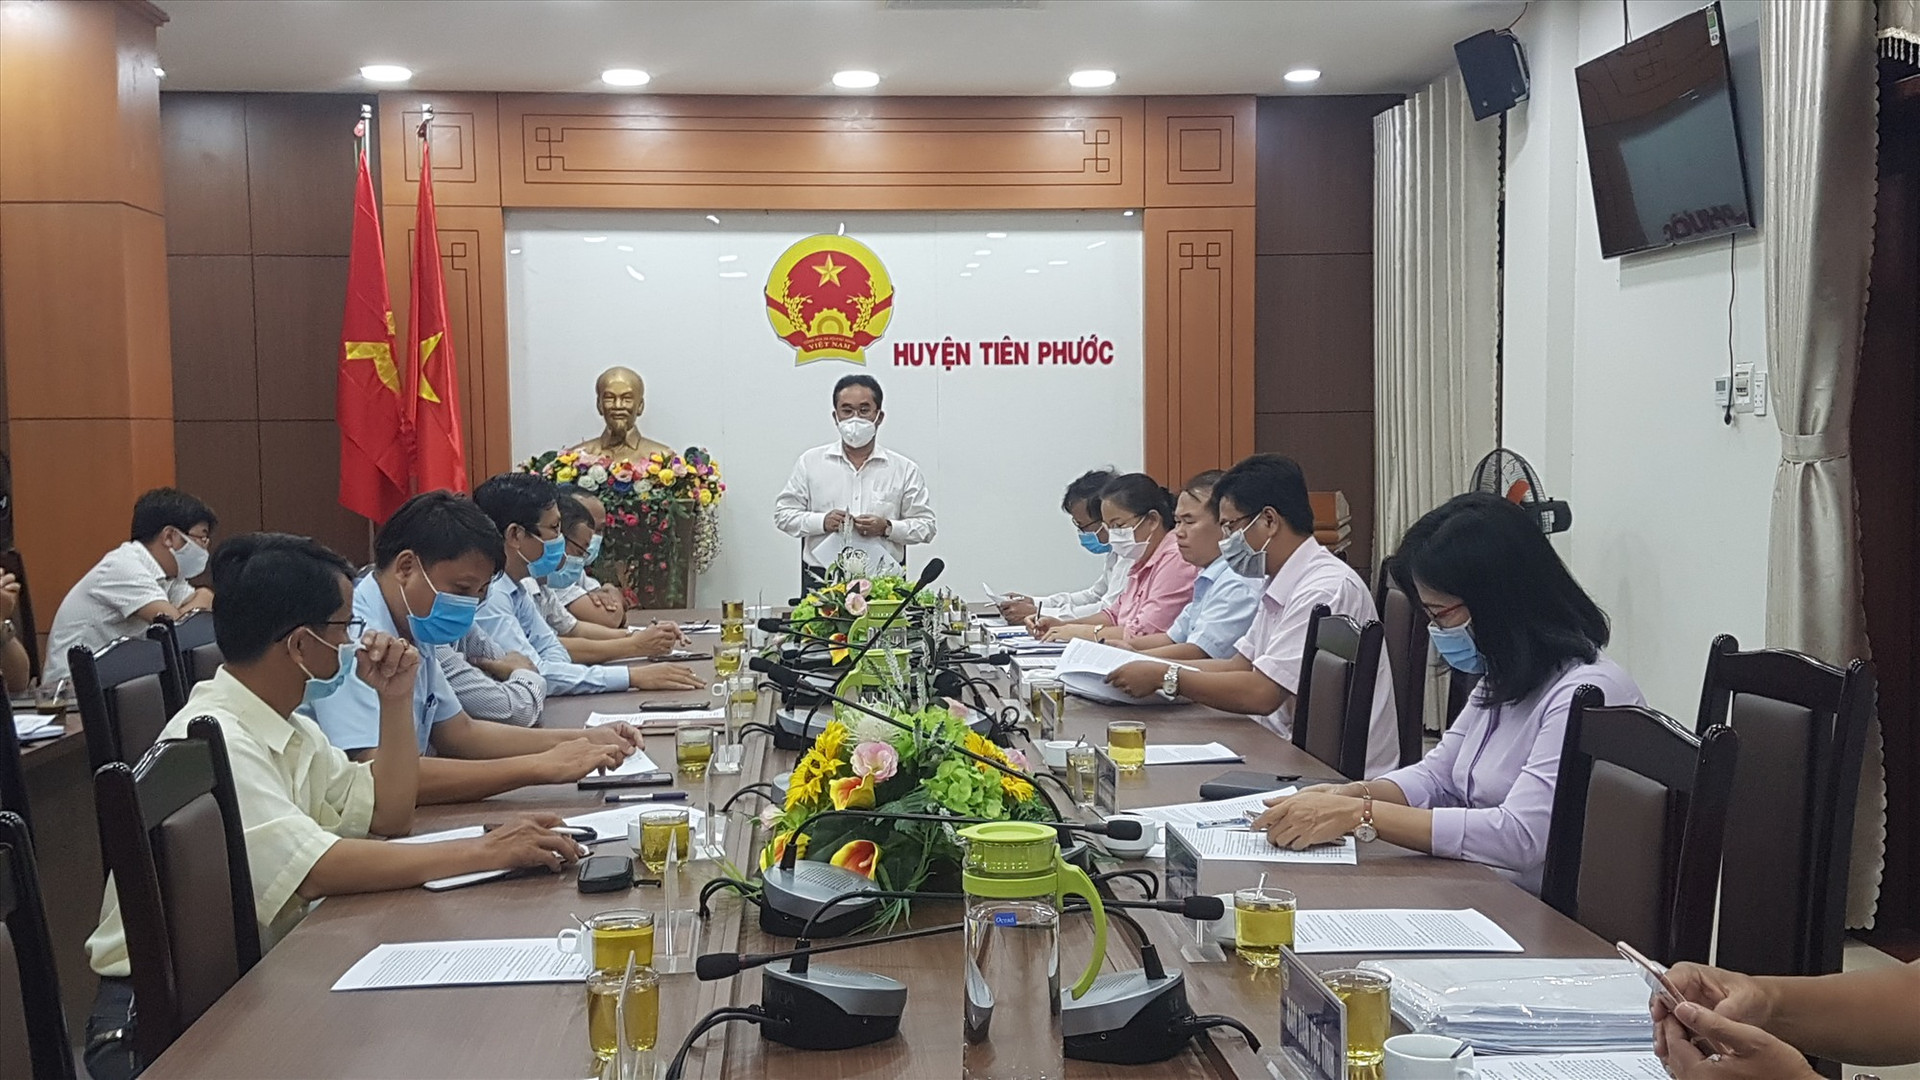 Phó Chủ tịch UBND tỉnh Trần Anh Tuấn làm việc với huyện Tiên Phước. Ảnh: D.L